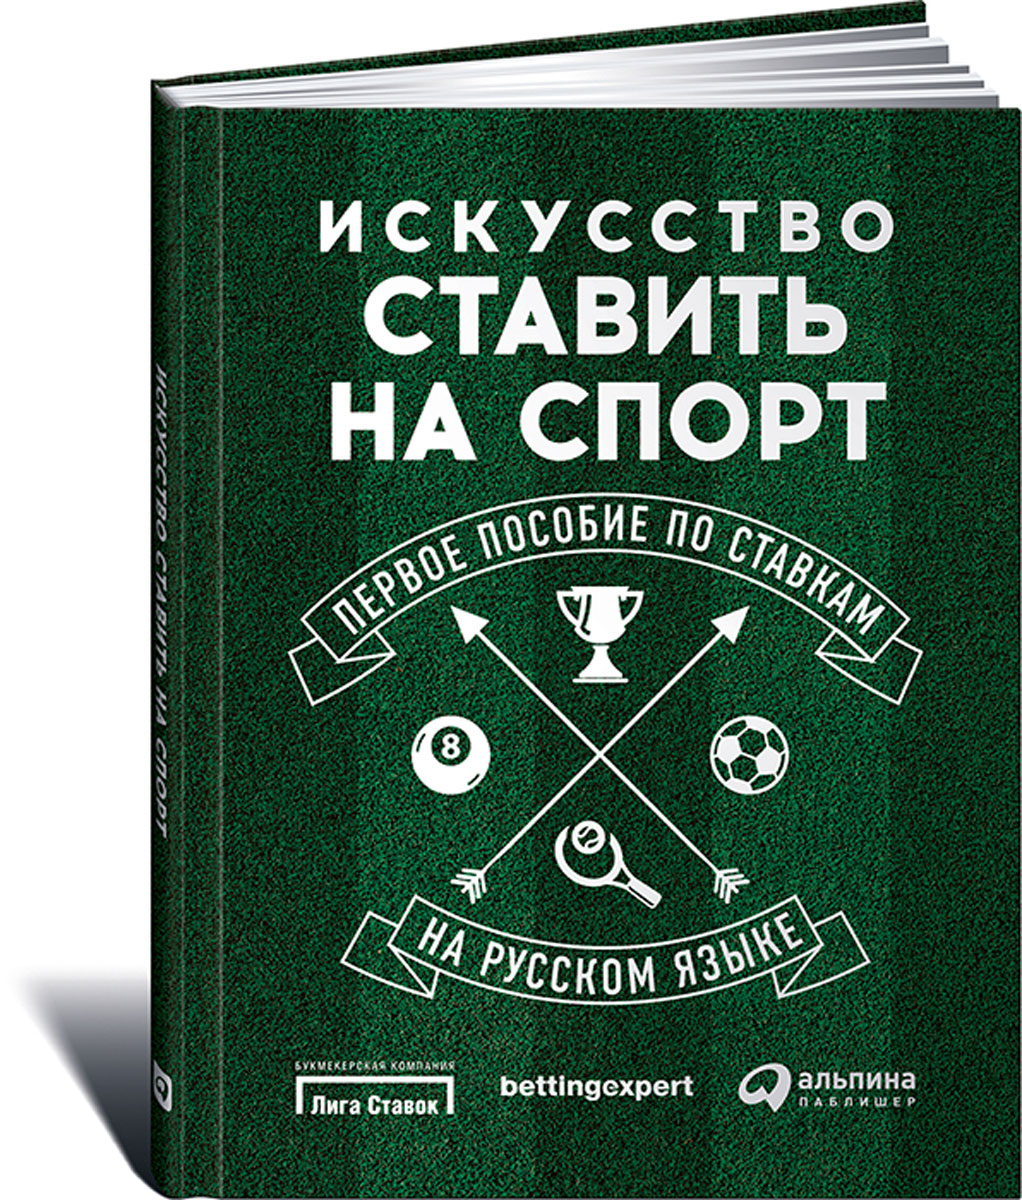 Книги по ставкам на спорт на русском играть в карты с живыми людьми